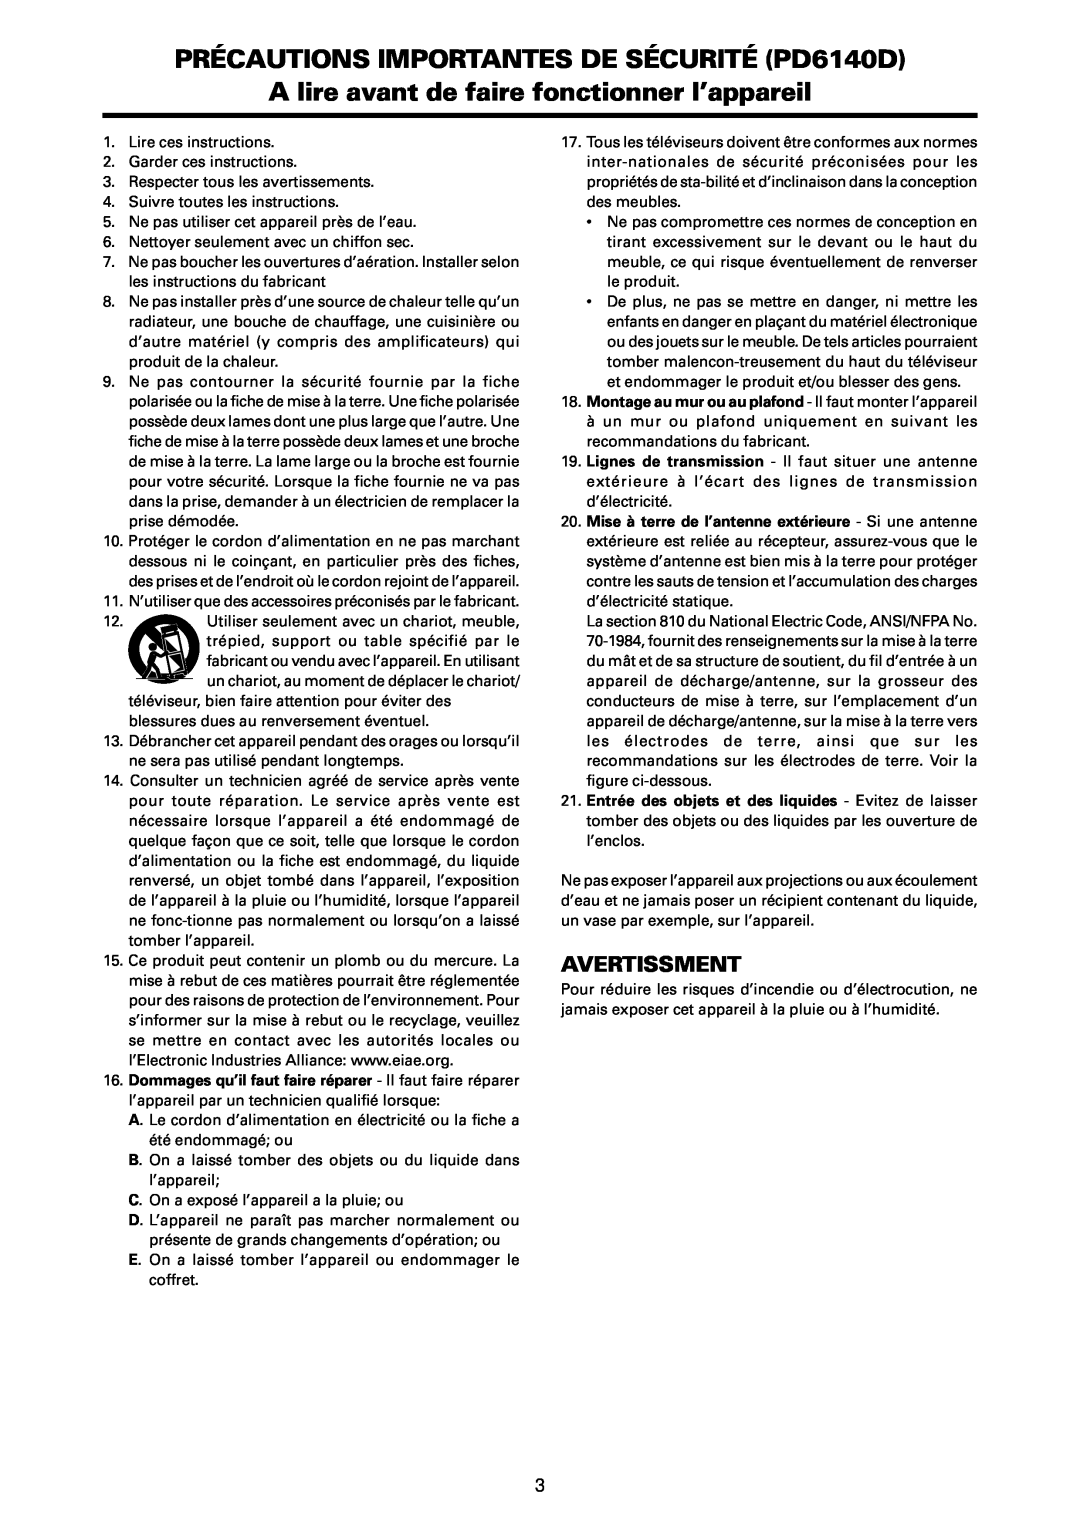 Marantz manual PRÉCAUTIONS IMPORTANTES DE SÉCURITÉ PD6140D, A lire avant de faire fonctionner l’appareil, Avertissment 